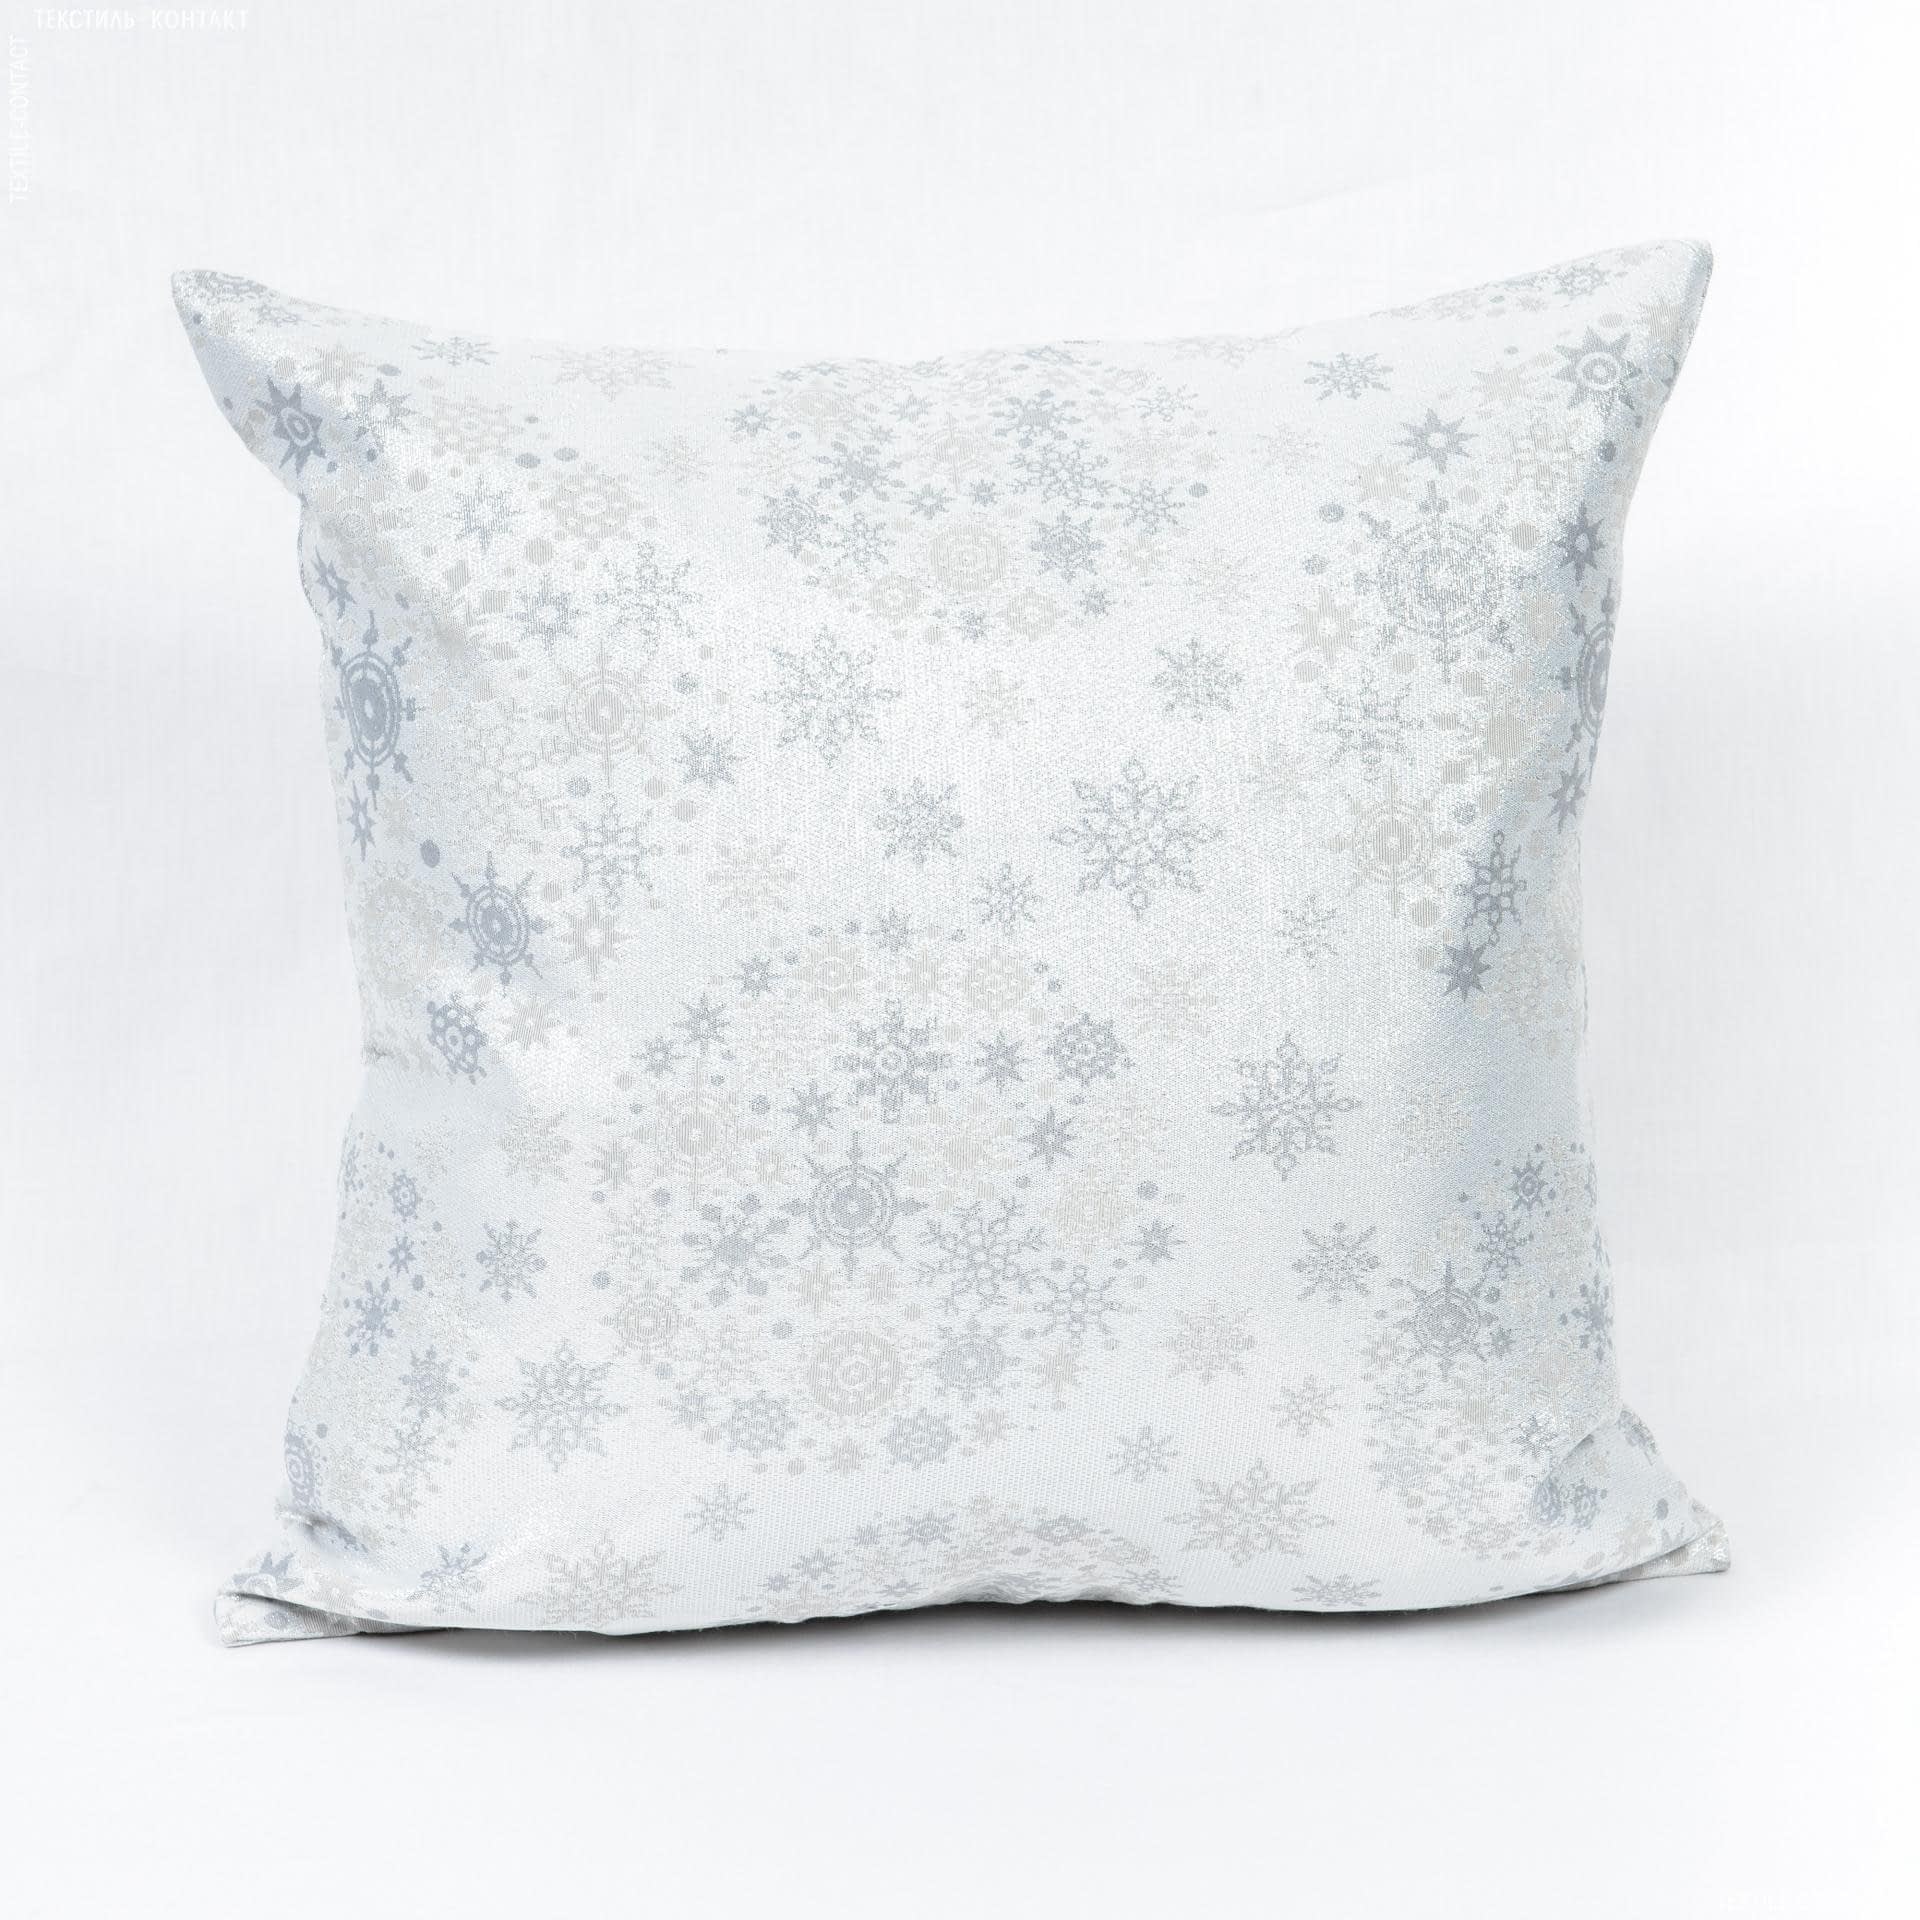 Ткани готовые изделия - Чехол  на подушку новогодний/ Снежка , серебро 45х45см